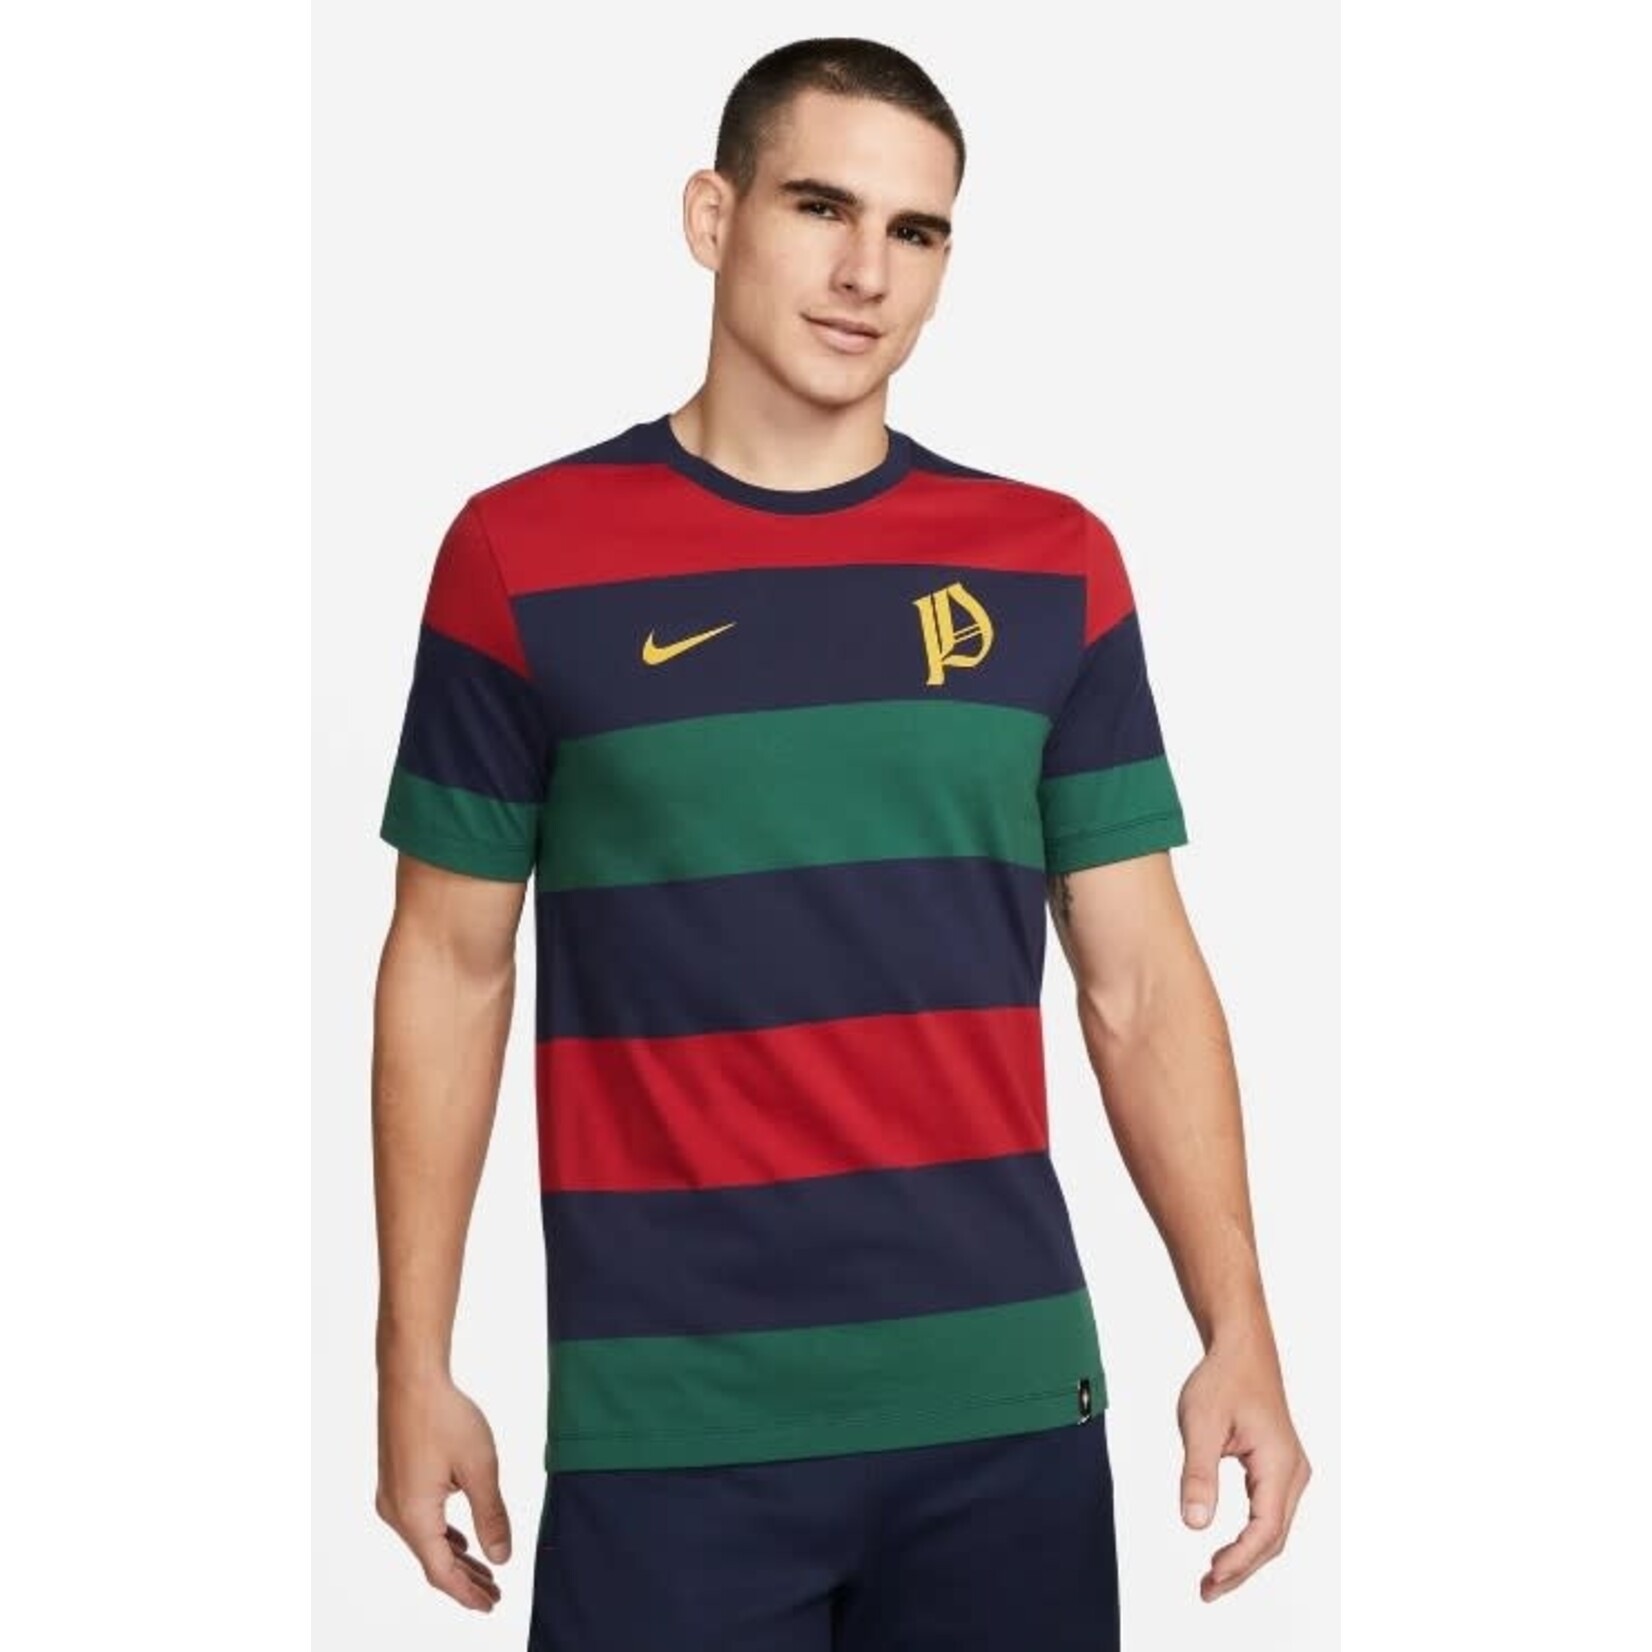 Nike Portugal Nike Ignite T-Shirt - DH7670 451